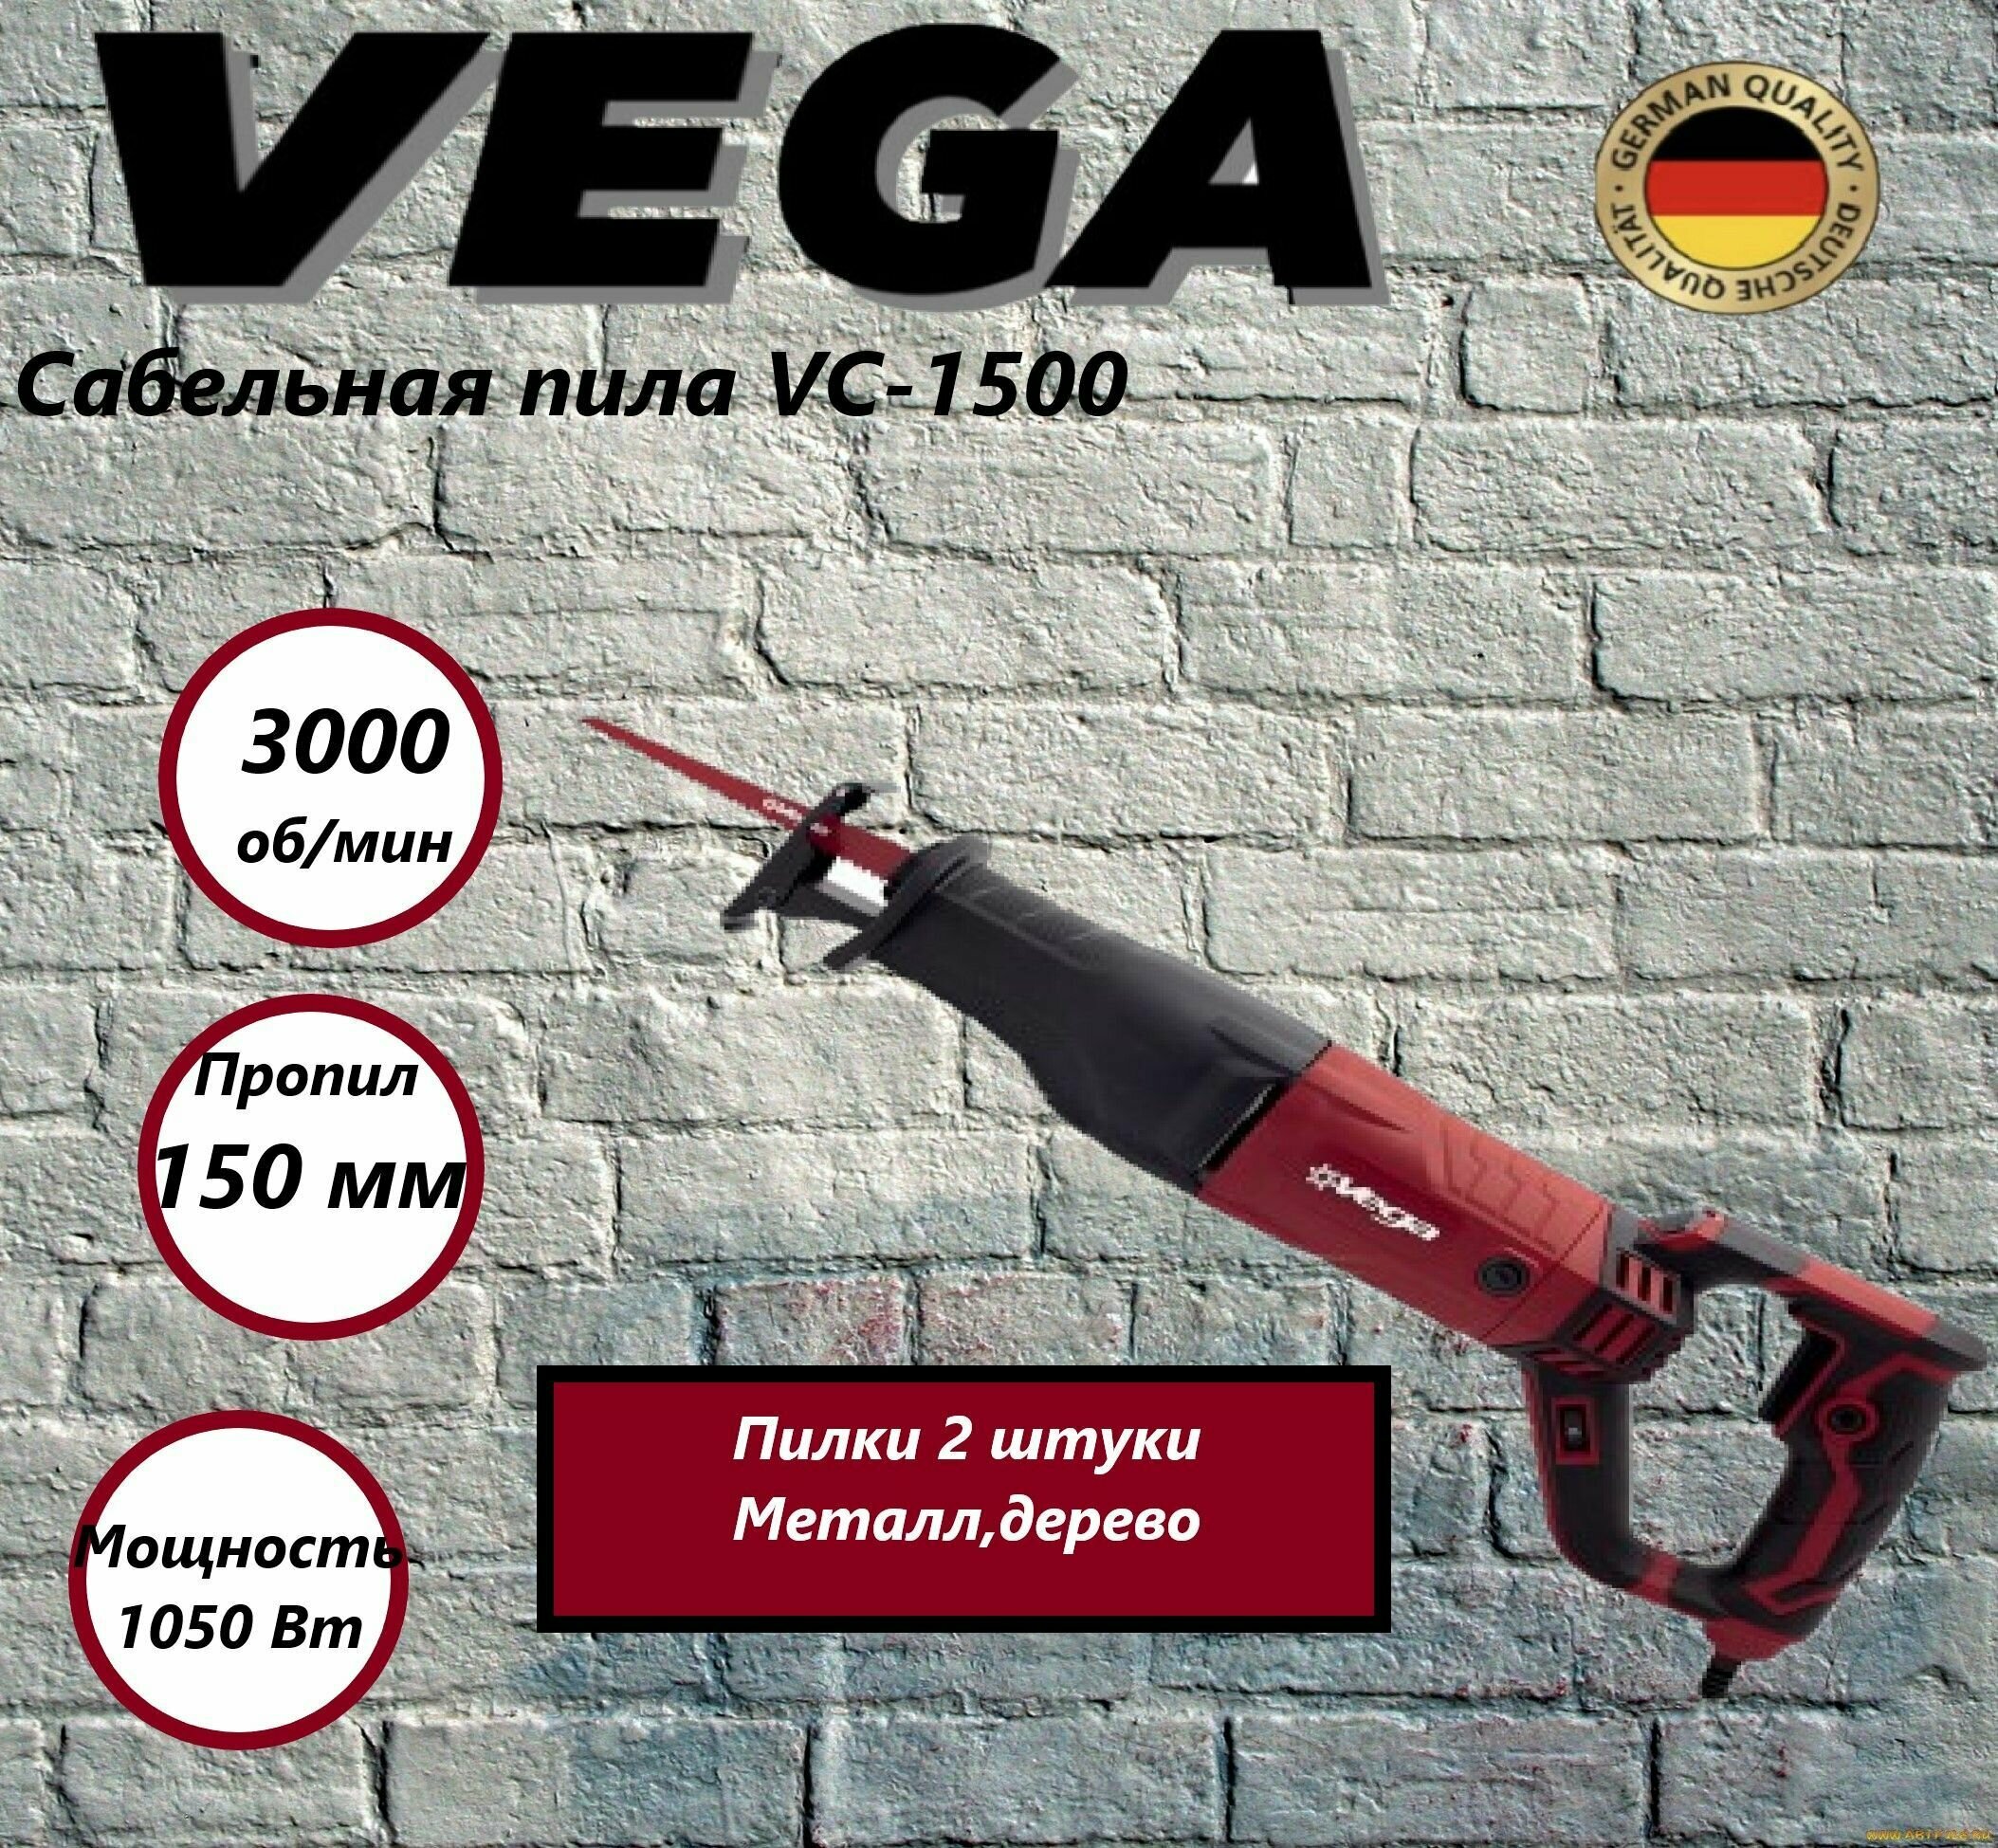 Сабельная пила VS-1500 Vega Professional 3000 ход/м, 1050Вт, пропил 150мм - фотография № 1